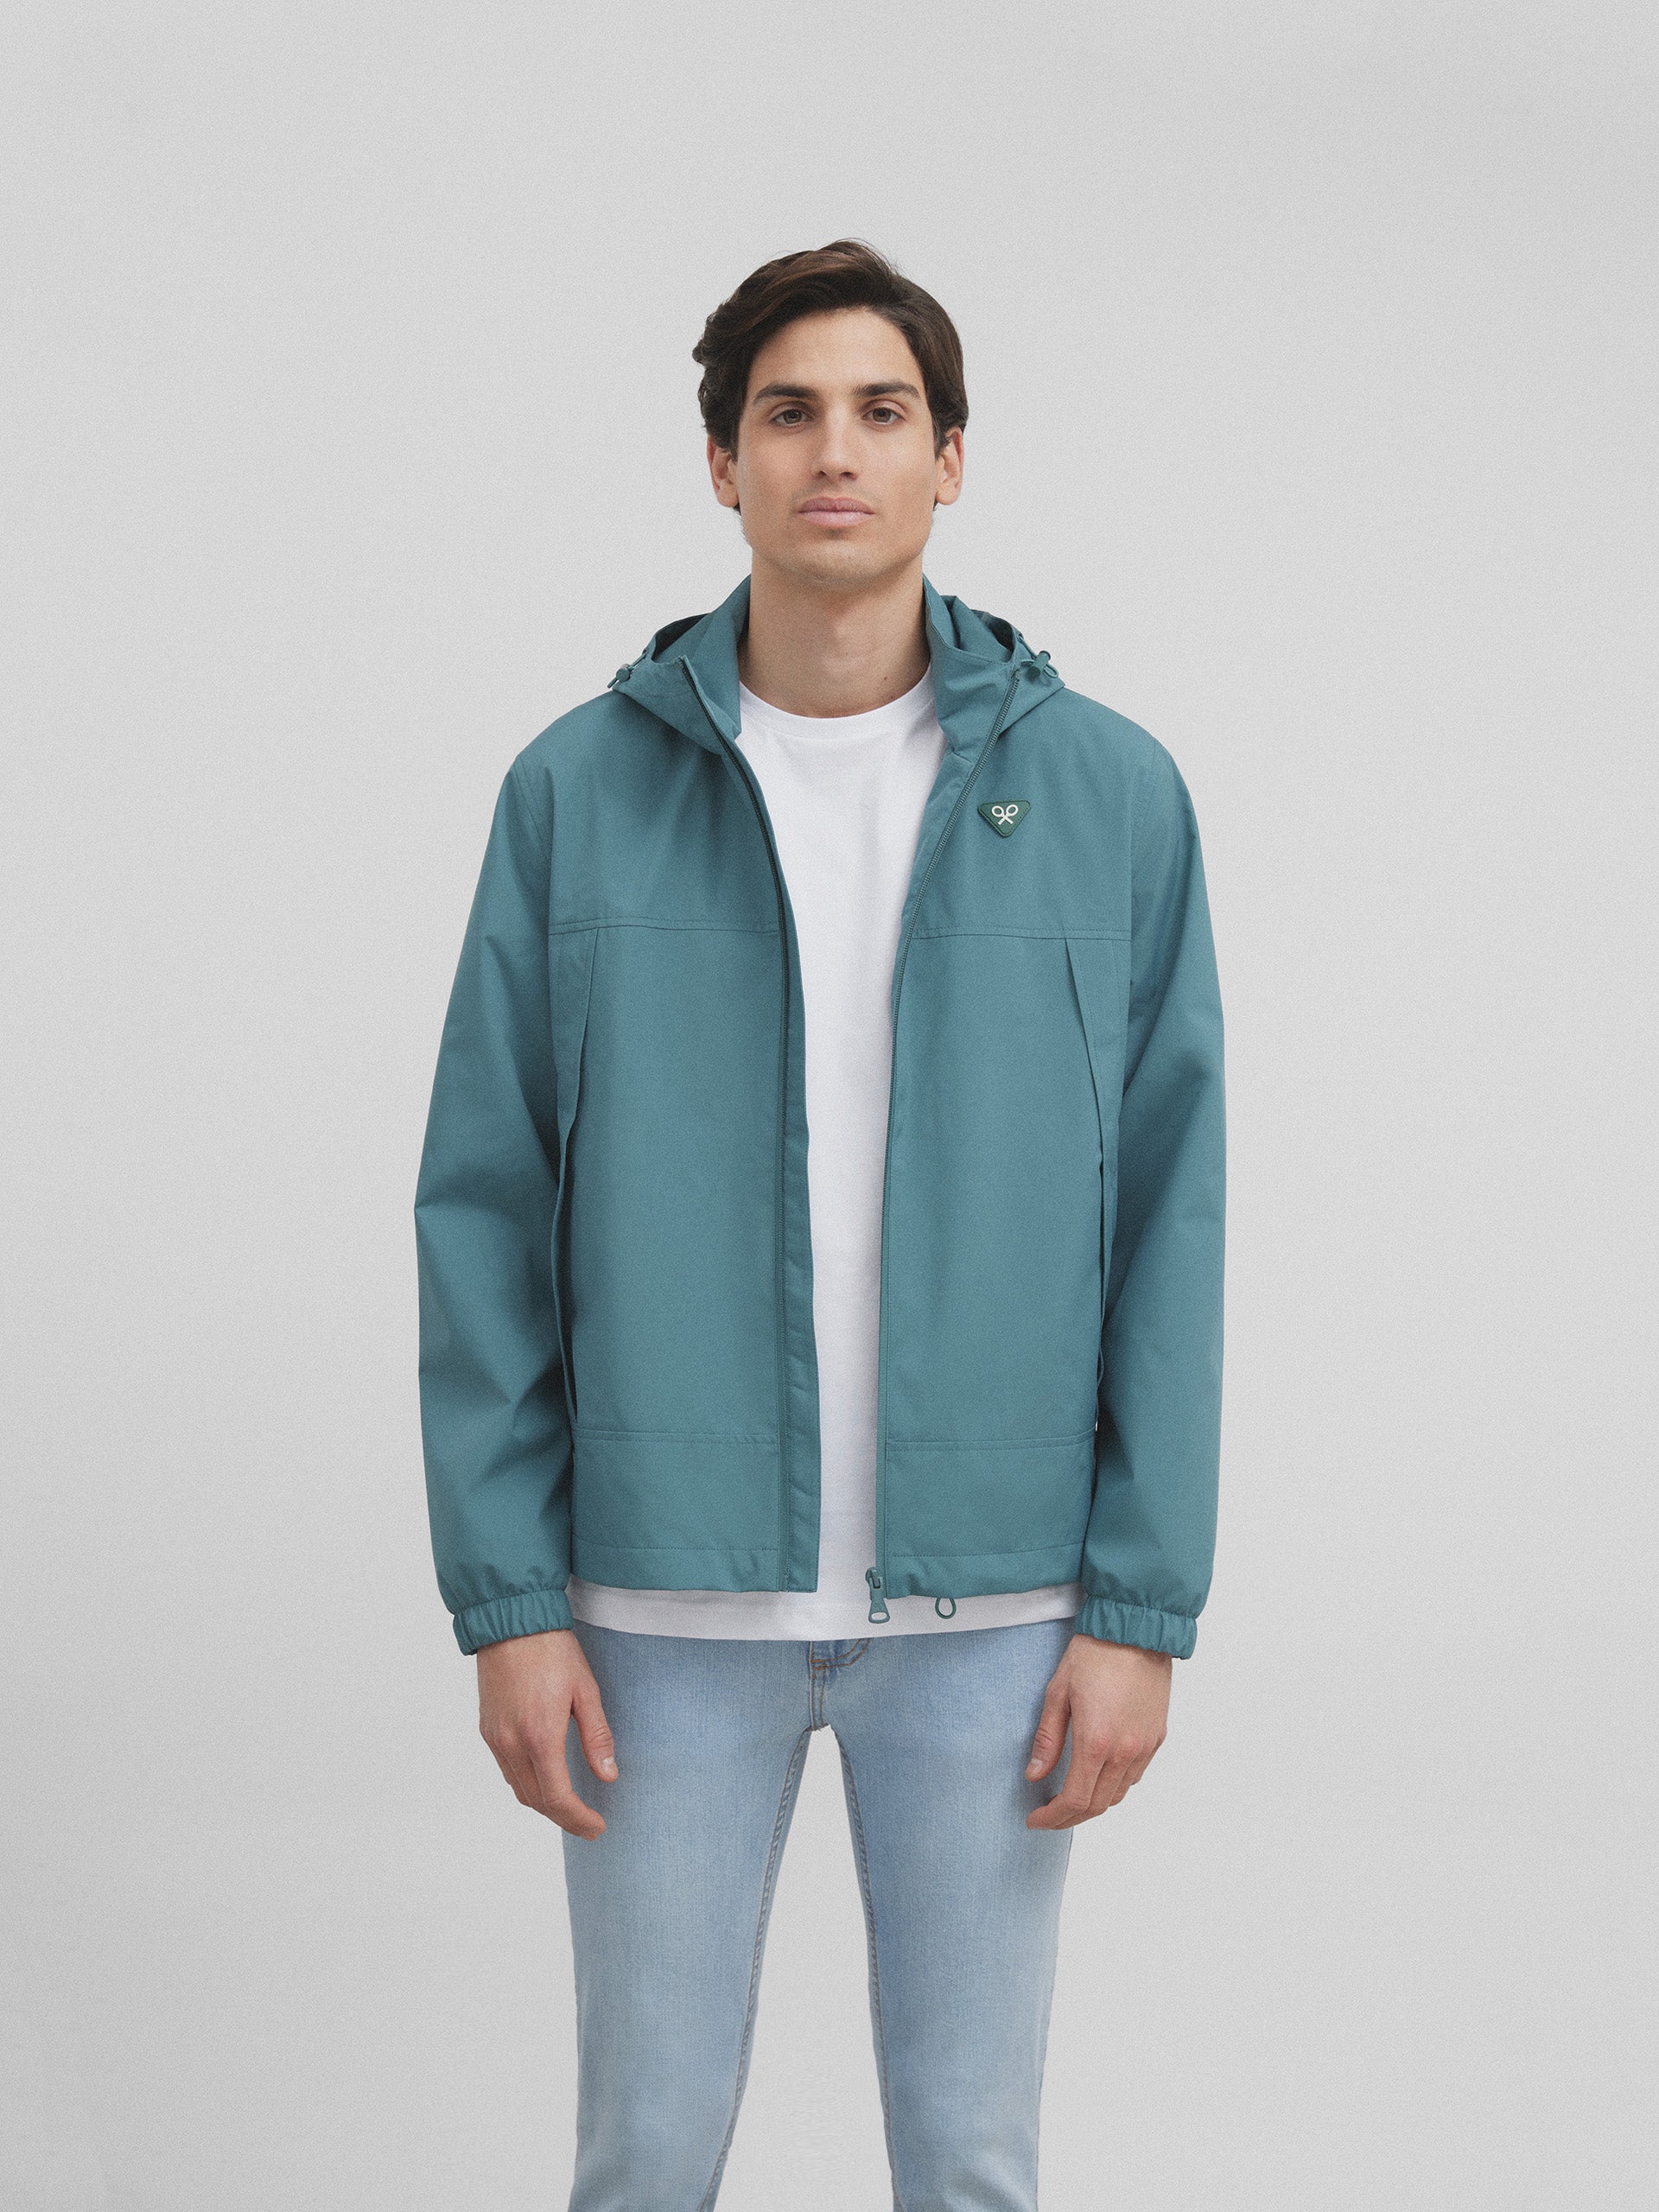 Green hooded windbreaker jacket